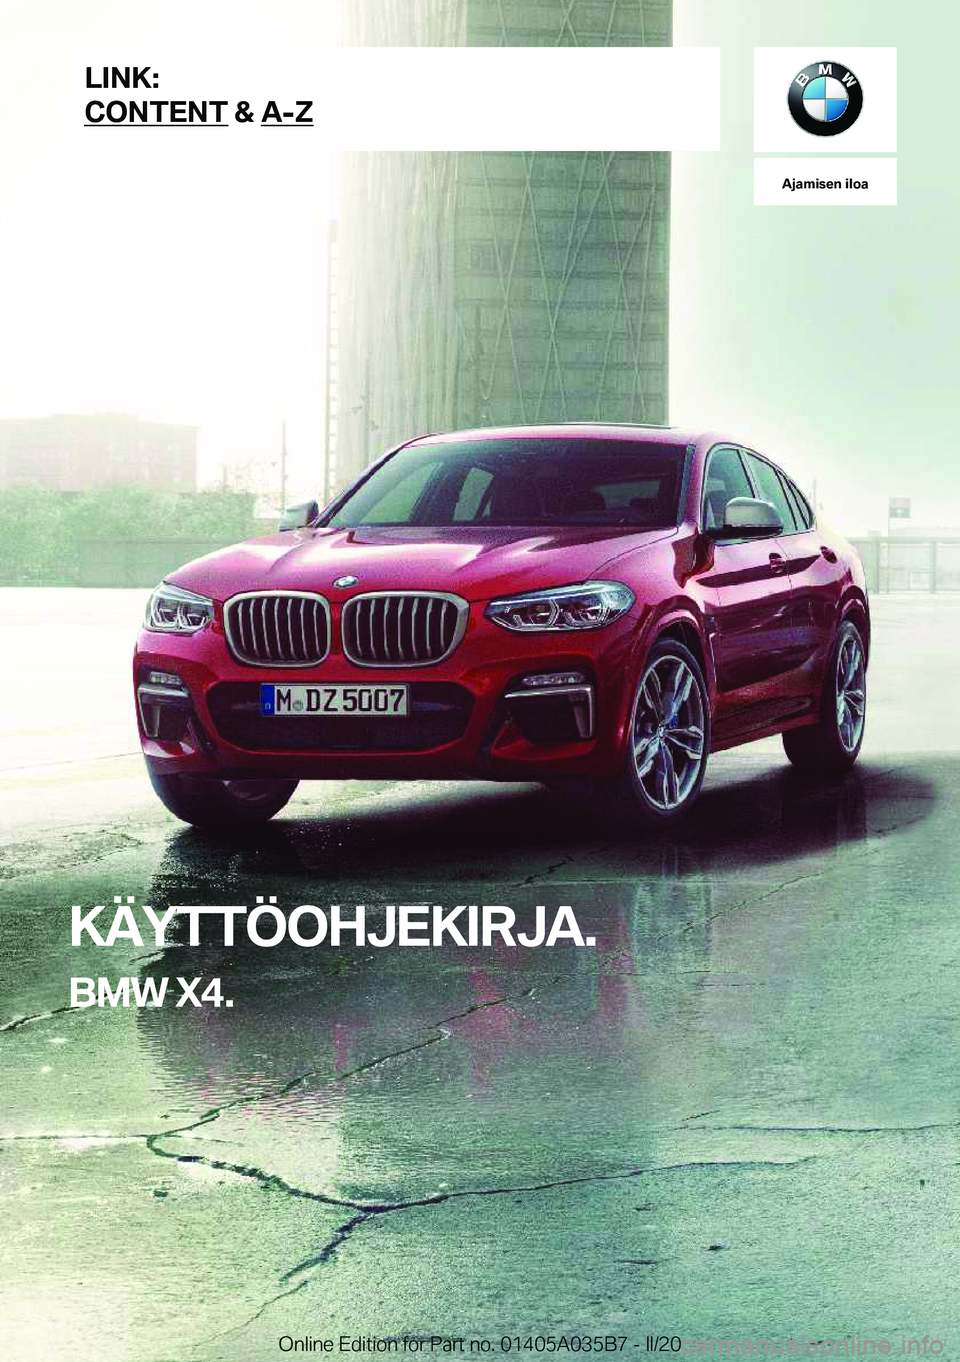 BMW X4 2020  Omistajan Käsikirja (in Finnish) �A�j�a�m�i�s�e�n��i�l�o�a
�K�